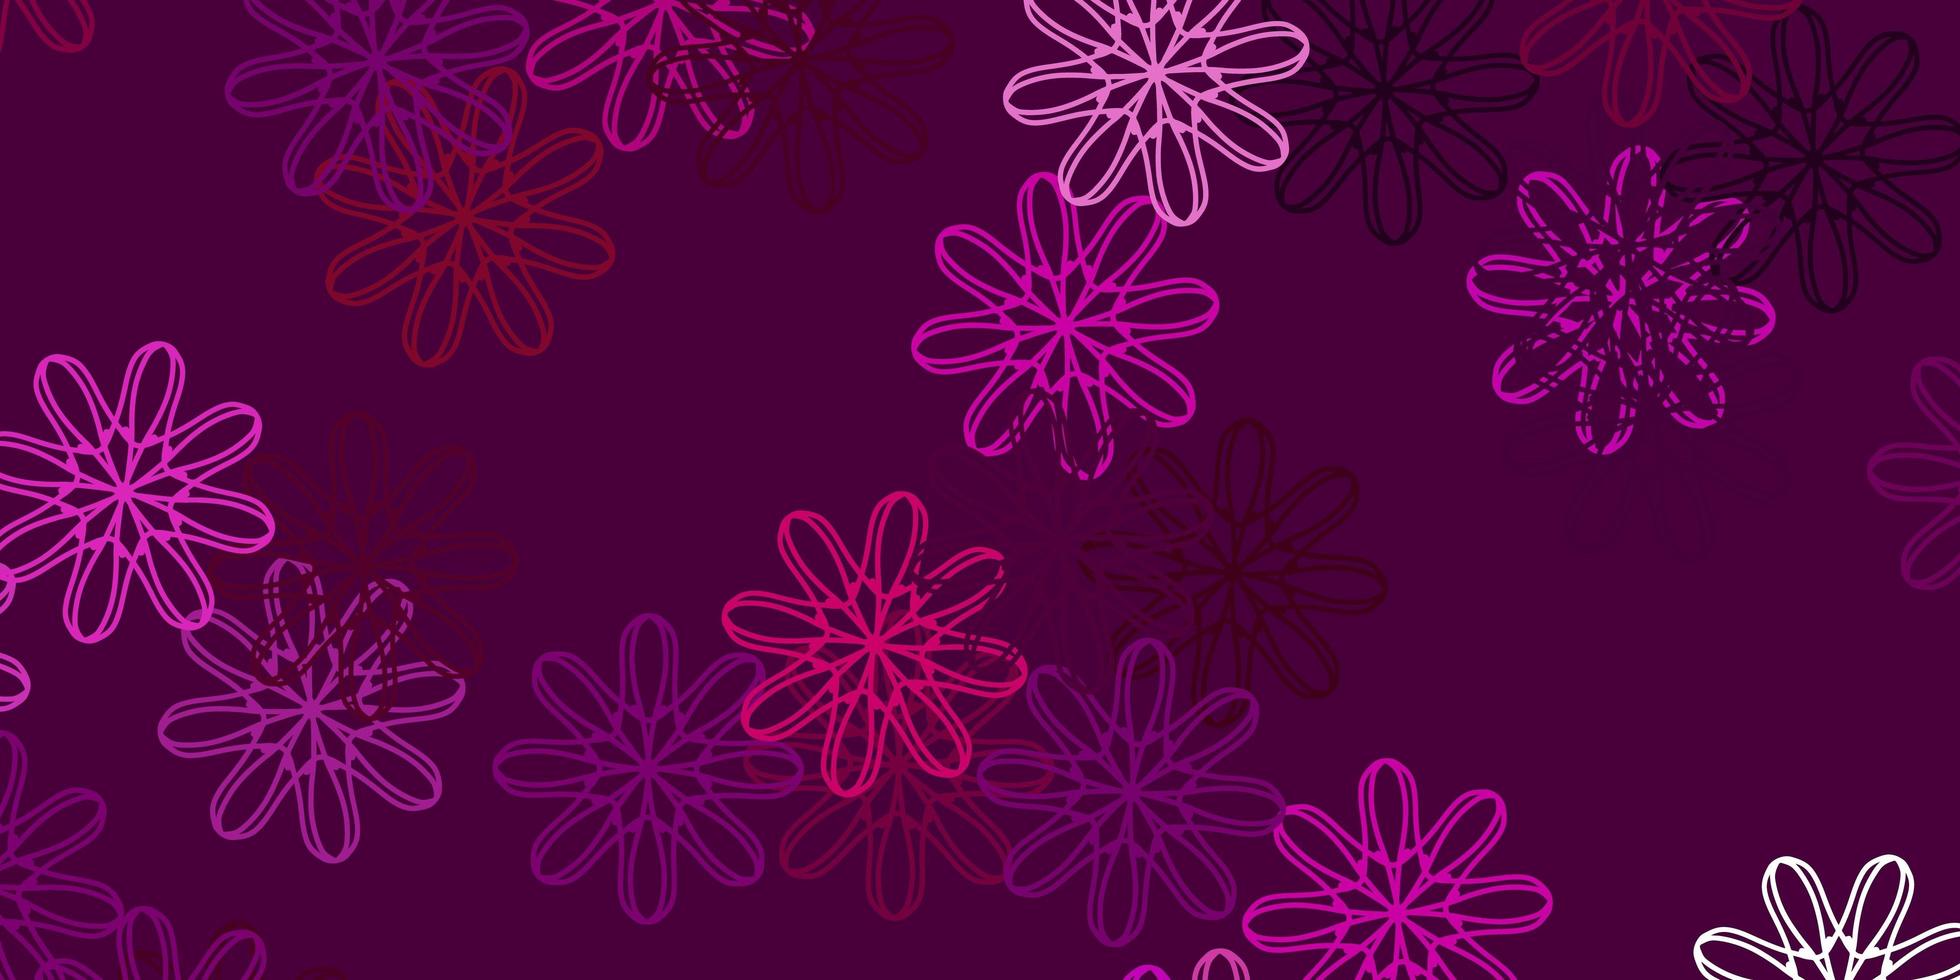 fond de doodle vecteur rose clair avec des fleurs.